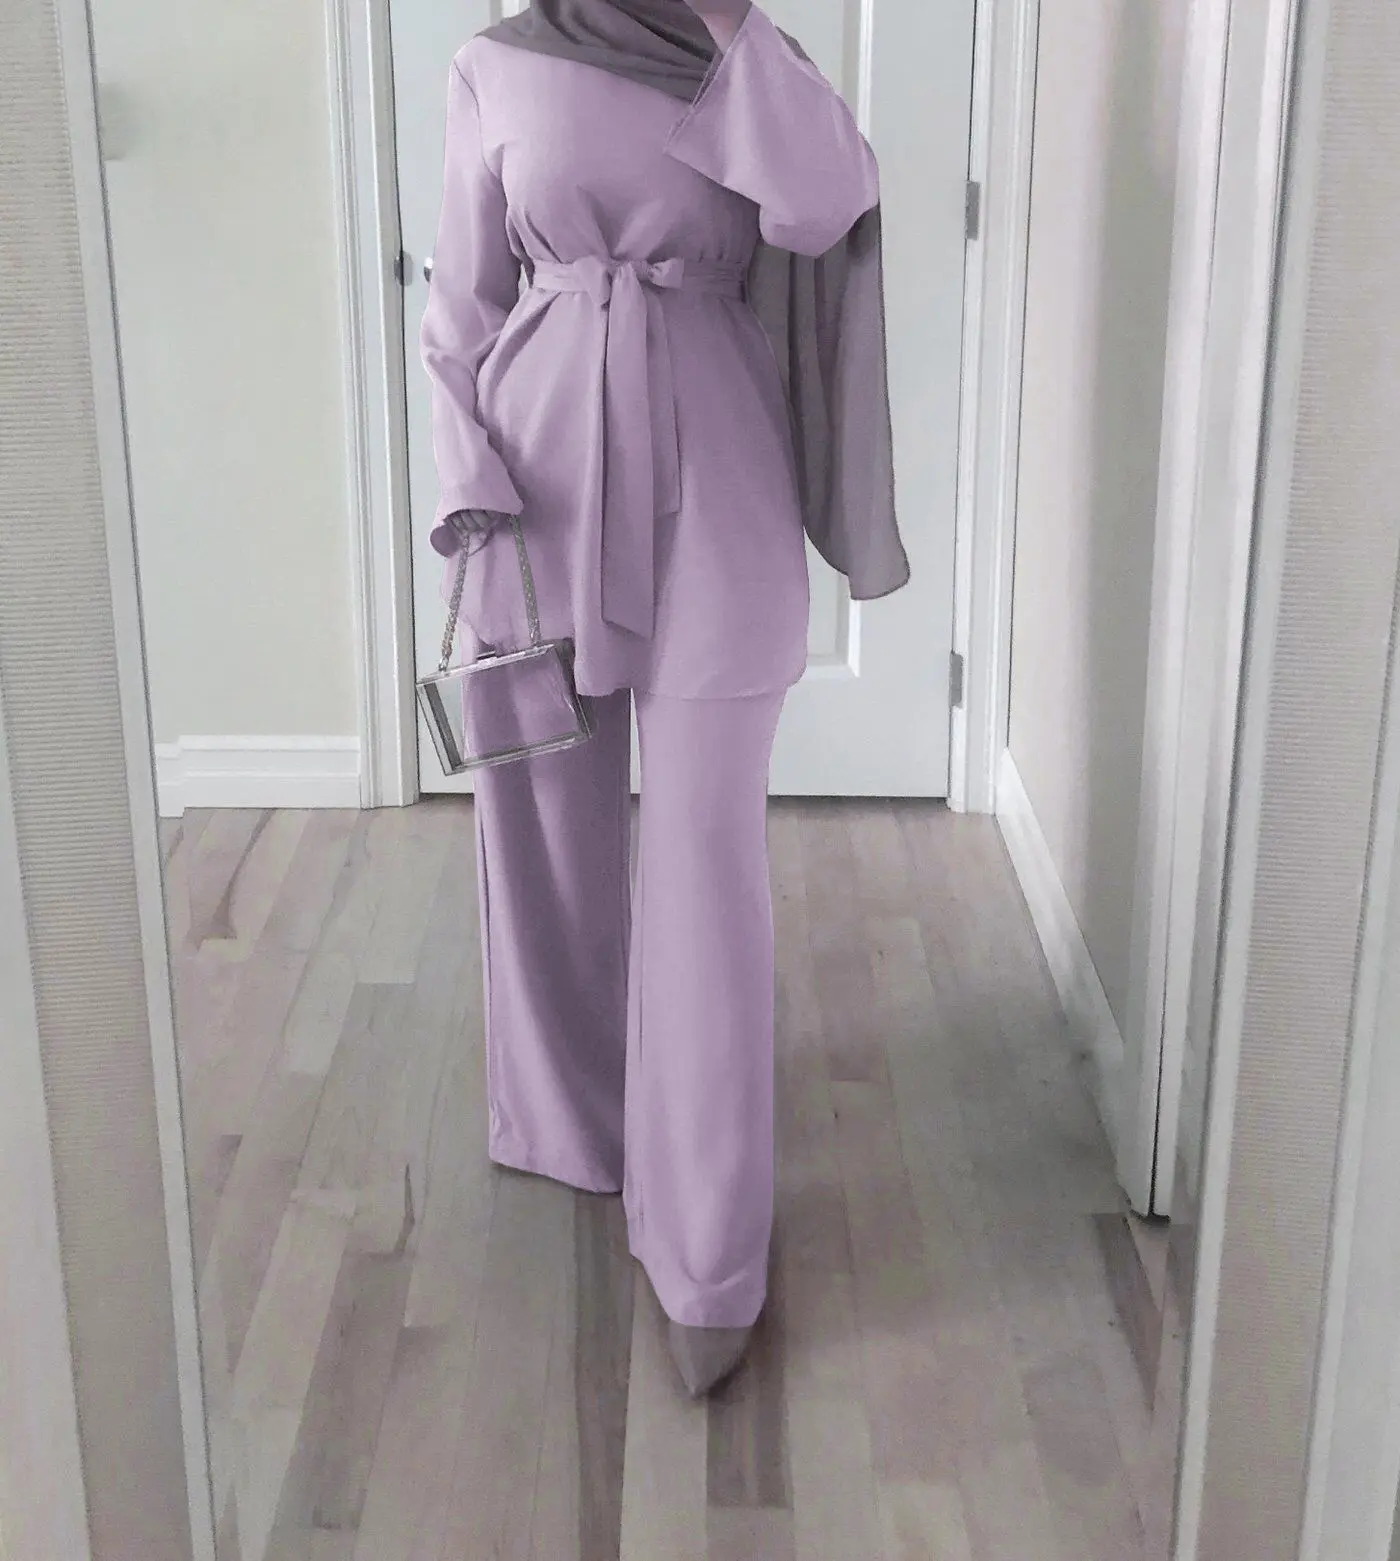 New Eid Dubai Türkei einfarbig einfach bescheiden Kaftan islamische Kleidung Frauen muslimisches Kleid Abaya